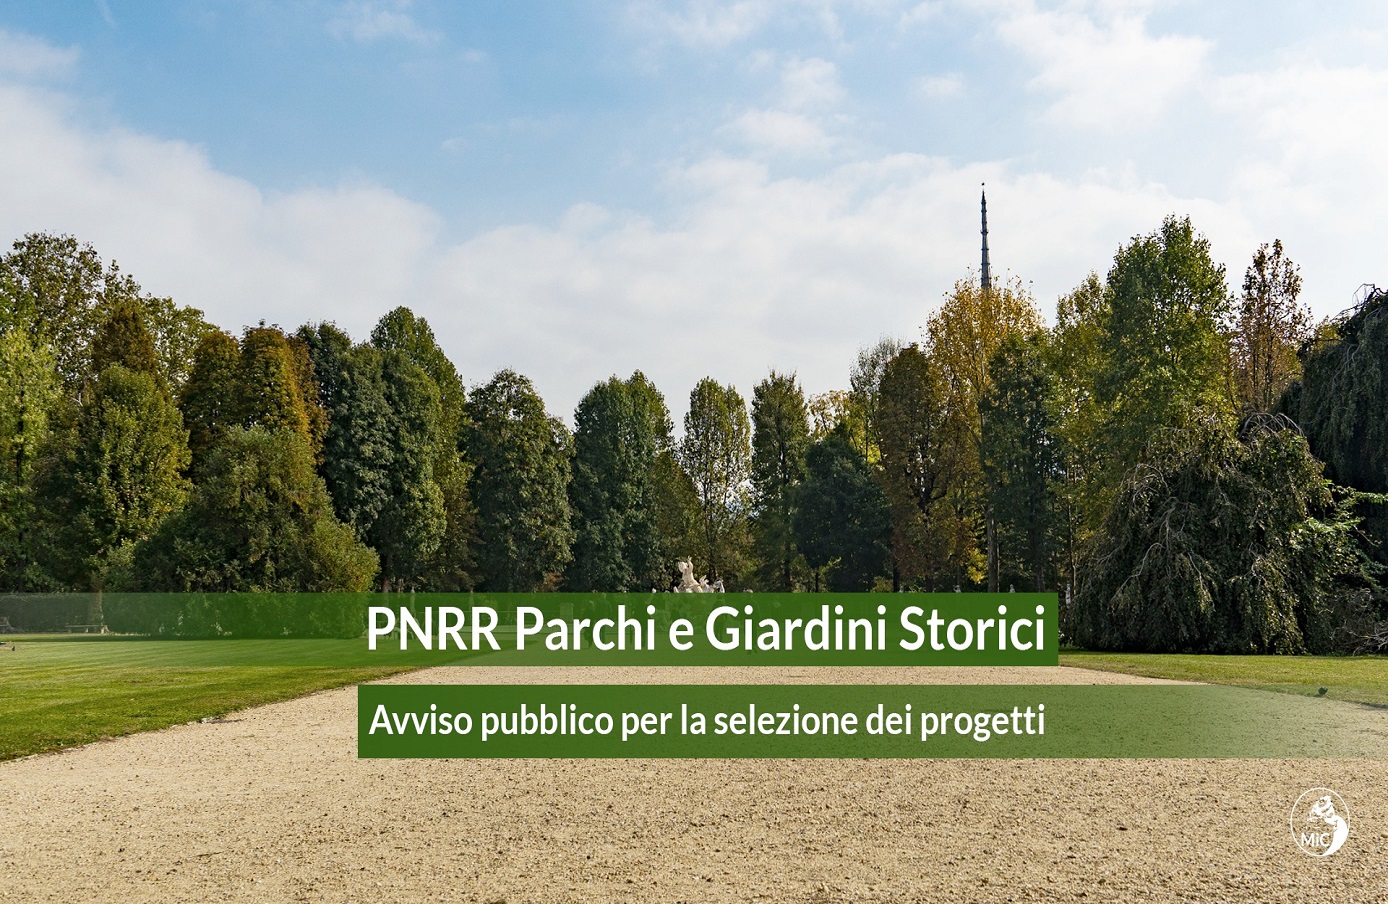 PNRR: RESTAURO E VALORIZZAZIONE DI PARCHI E GIARDINI STORICI: PUBBLICATI I RISULTATI